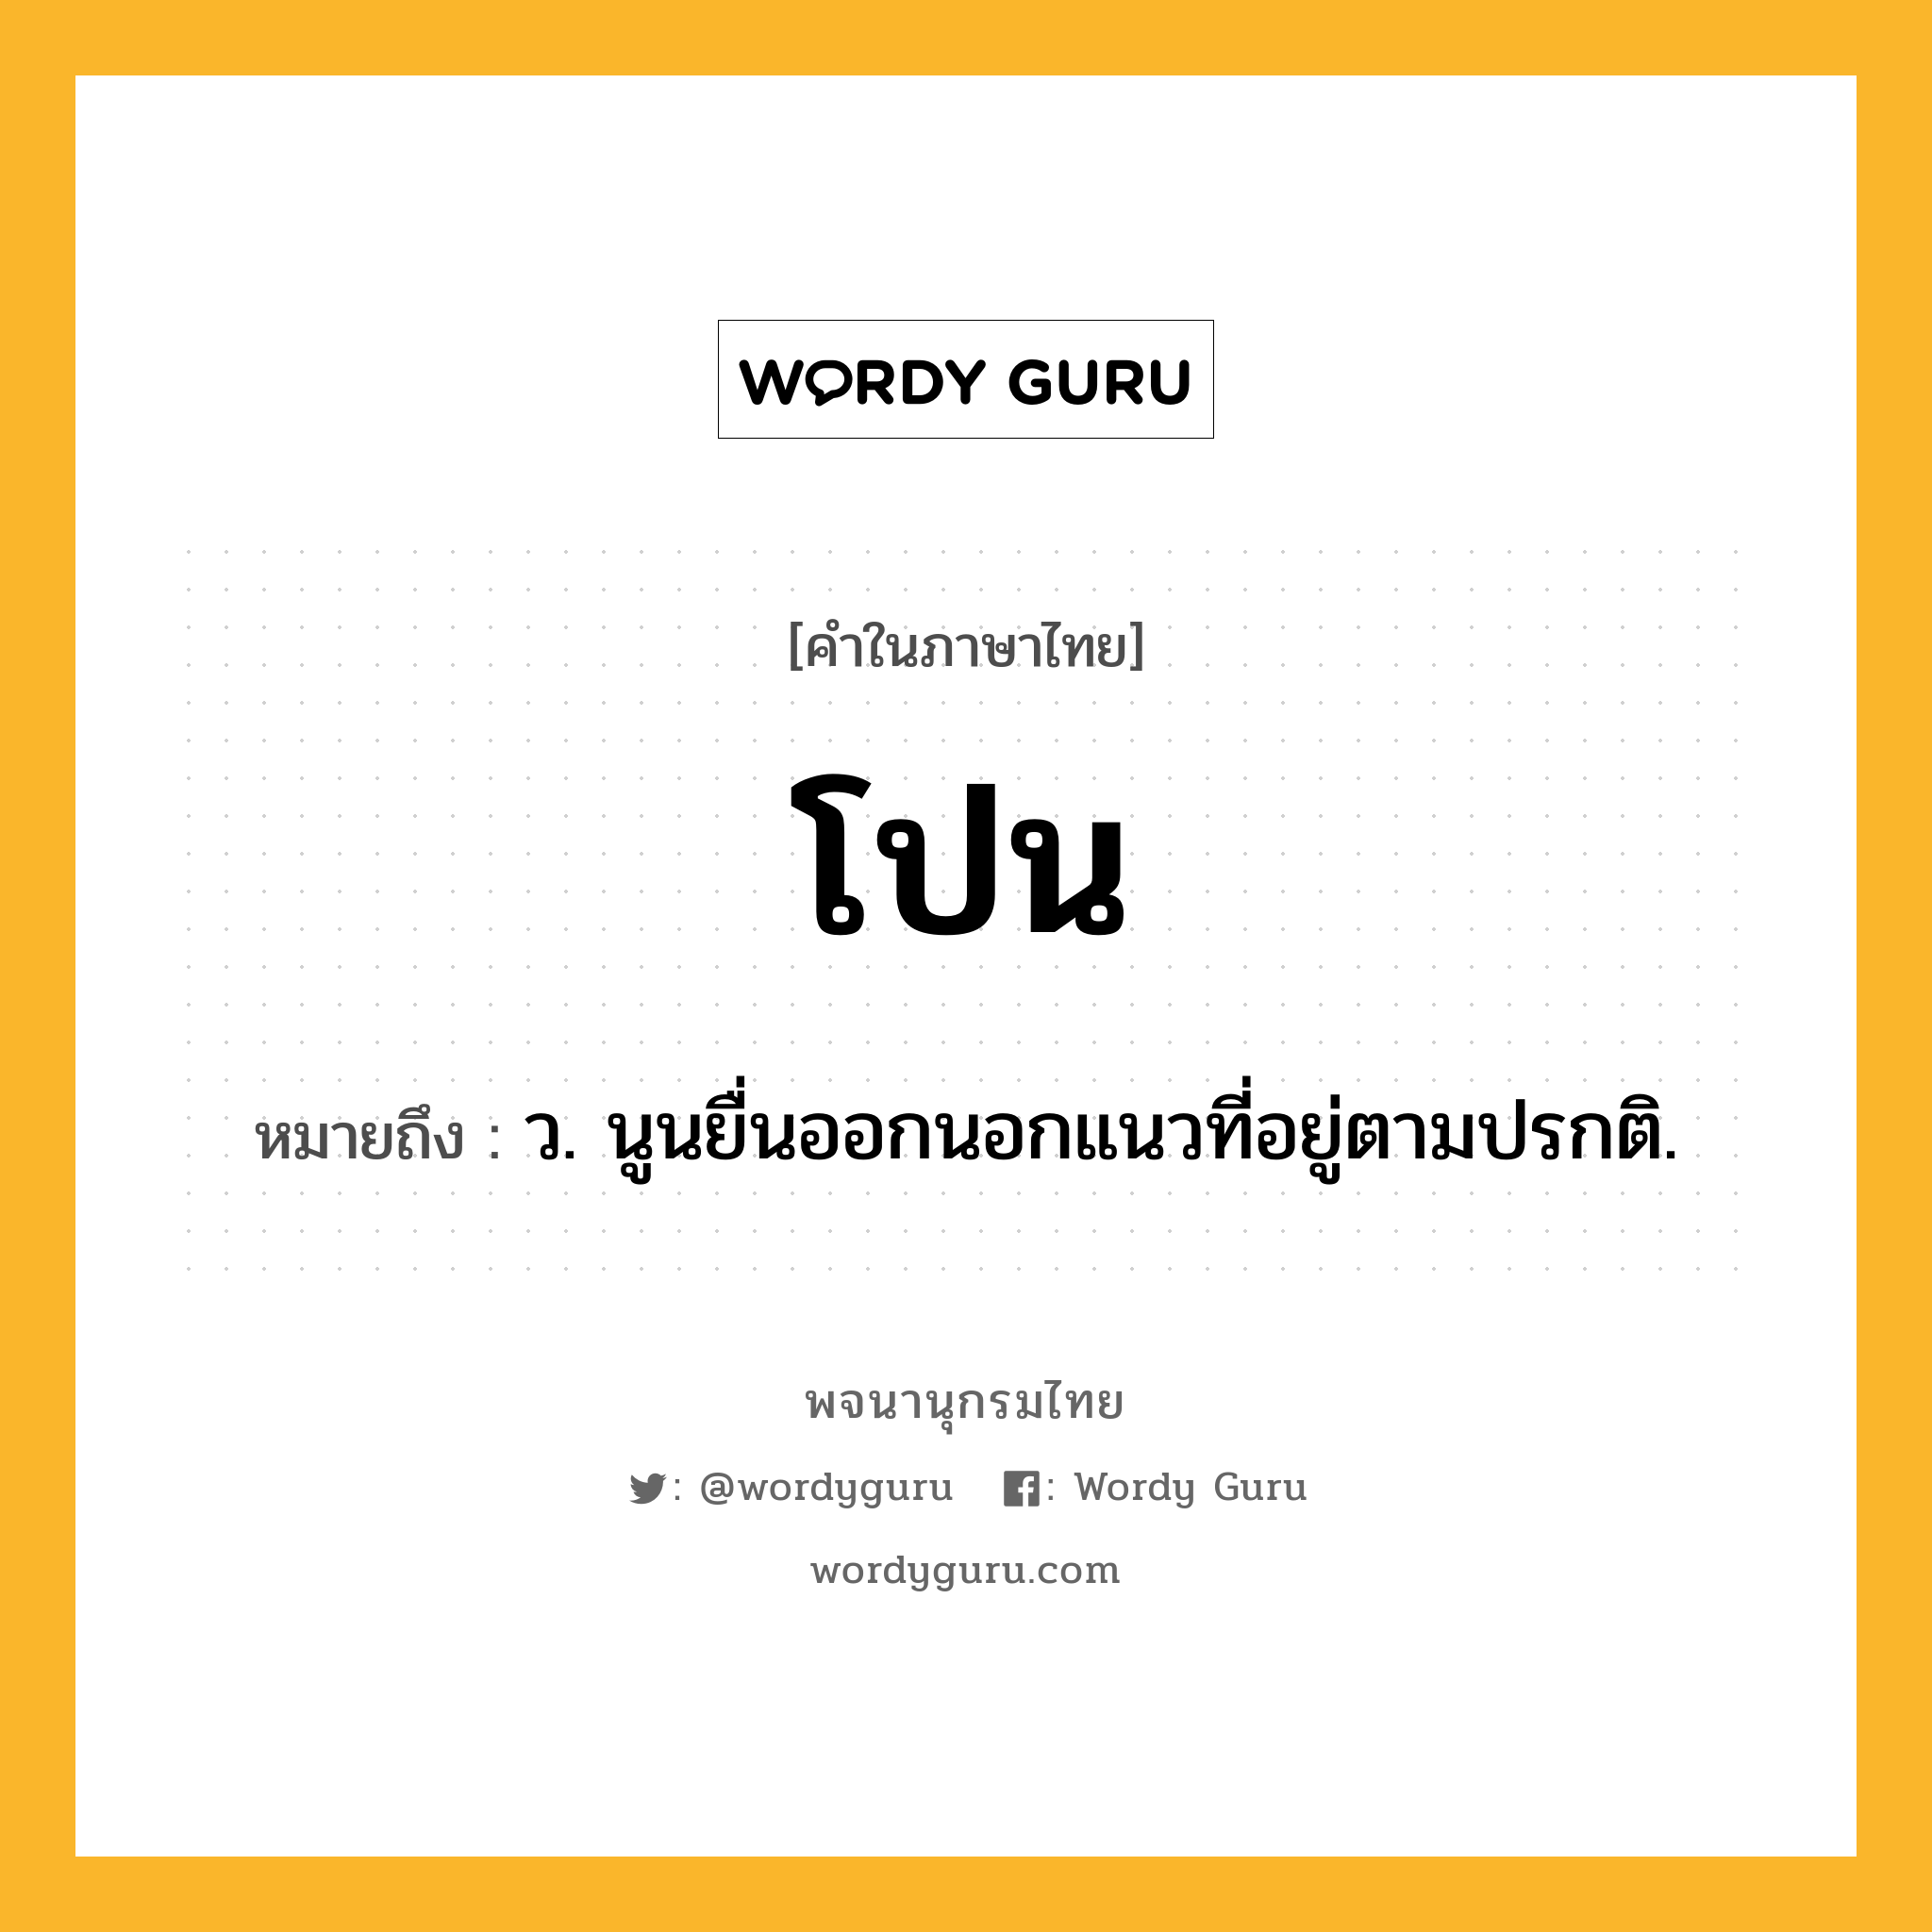 โปน หมายถึงอะไร?, คำในภาษาไทย โปน หมายถึง ว. นูนยื่นออกนอกแนวที่อยู่ตามปรกติ.